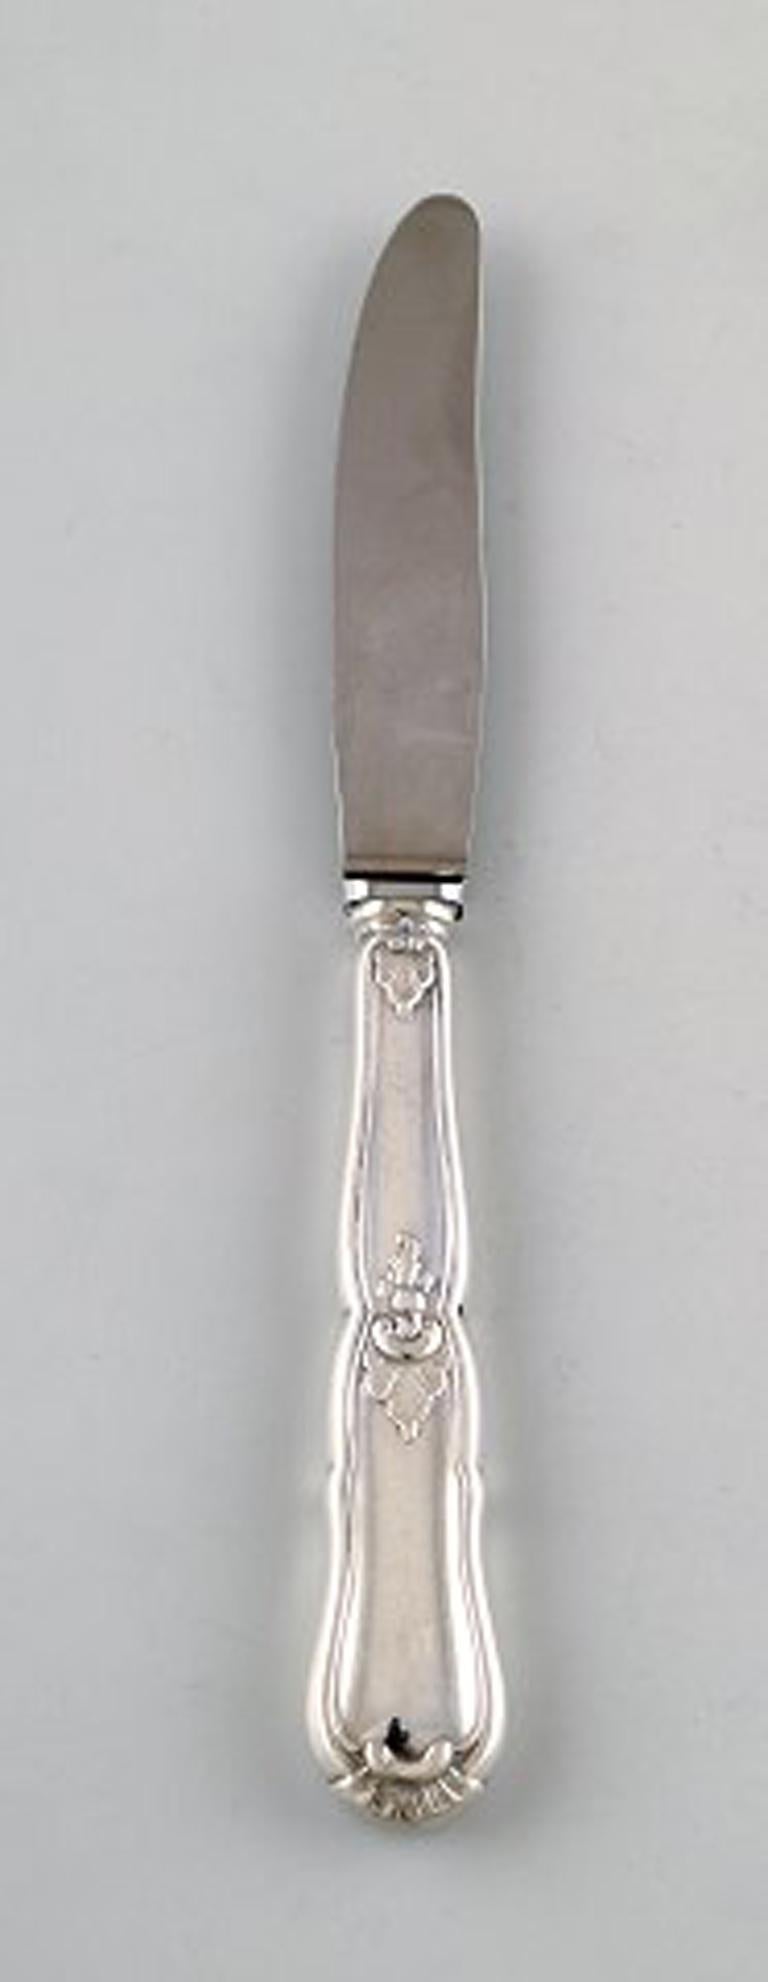 Dänisches Silber 830. 3 Obstmesser, um 1930.
In sehr gutem Zustand.
Gestempelt: 830S, PF.
Maße: 18,5 cm.